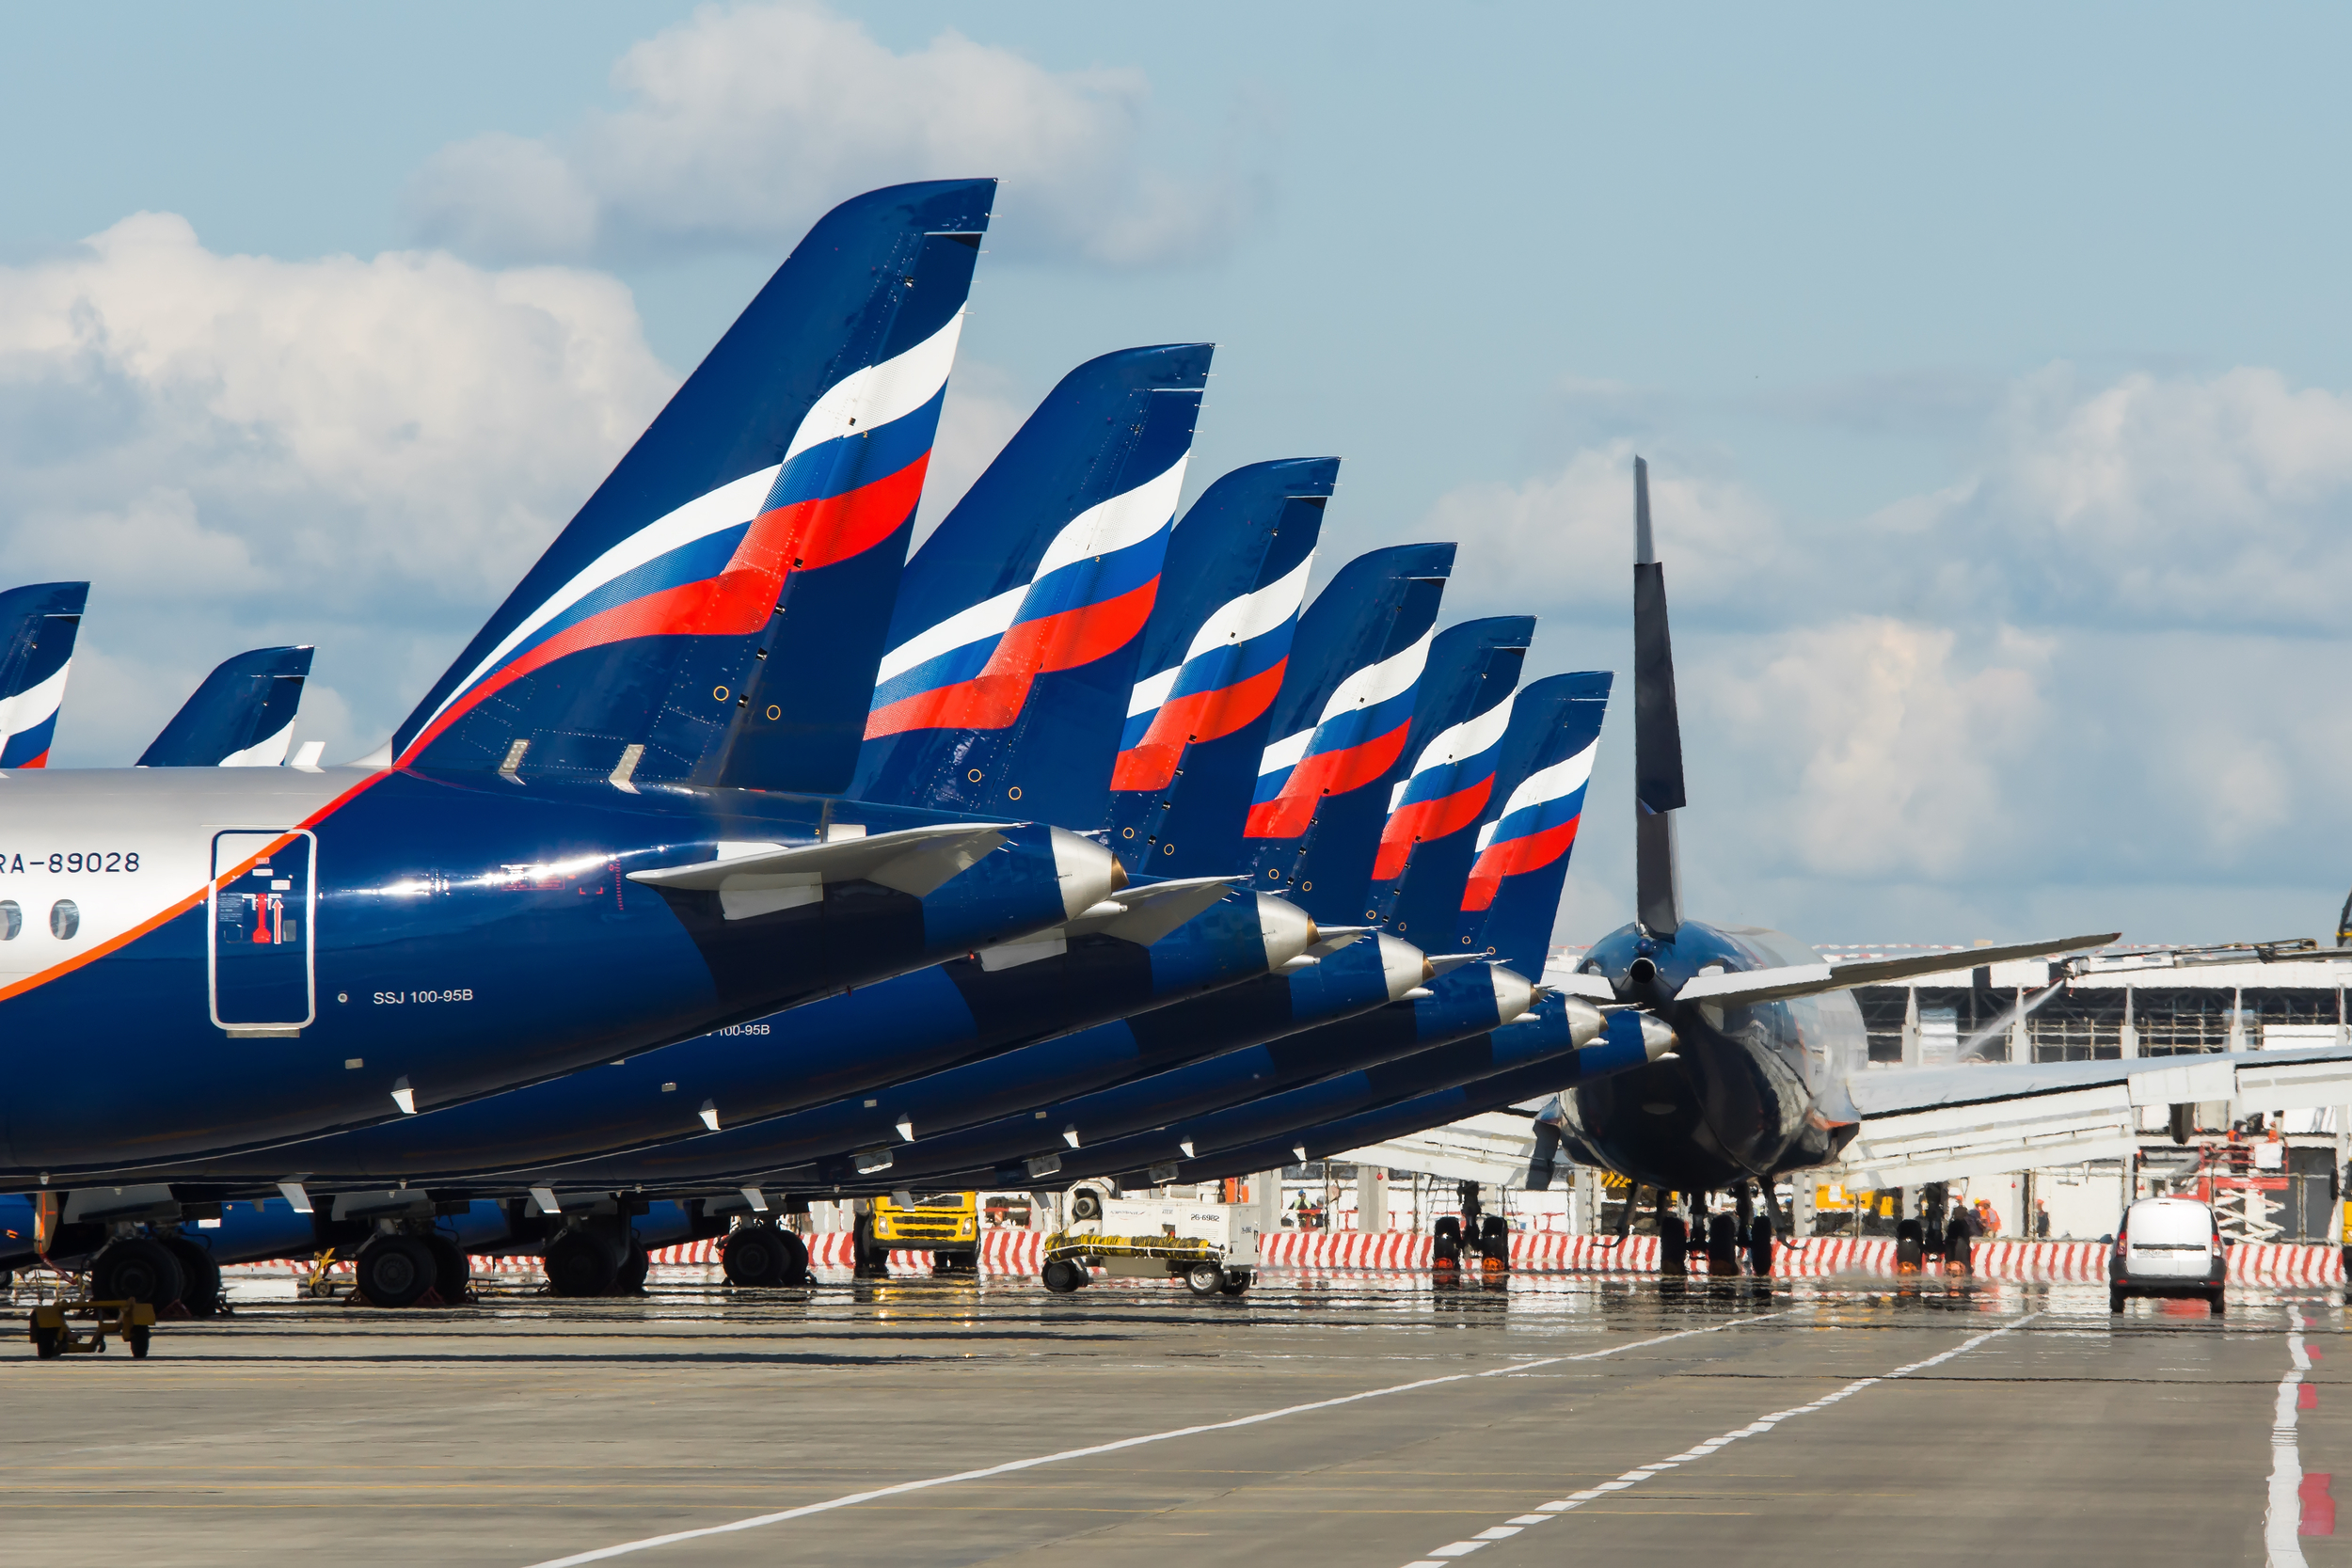 Samoloty rosyjskiej linii Aerofłot na lotnisku Szeremietiewo w Moskwie. Fot. Media_works / Shutterstock.com